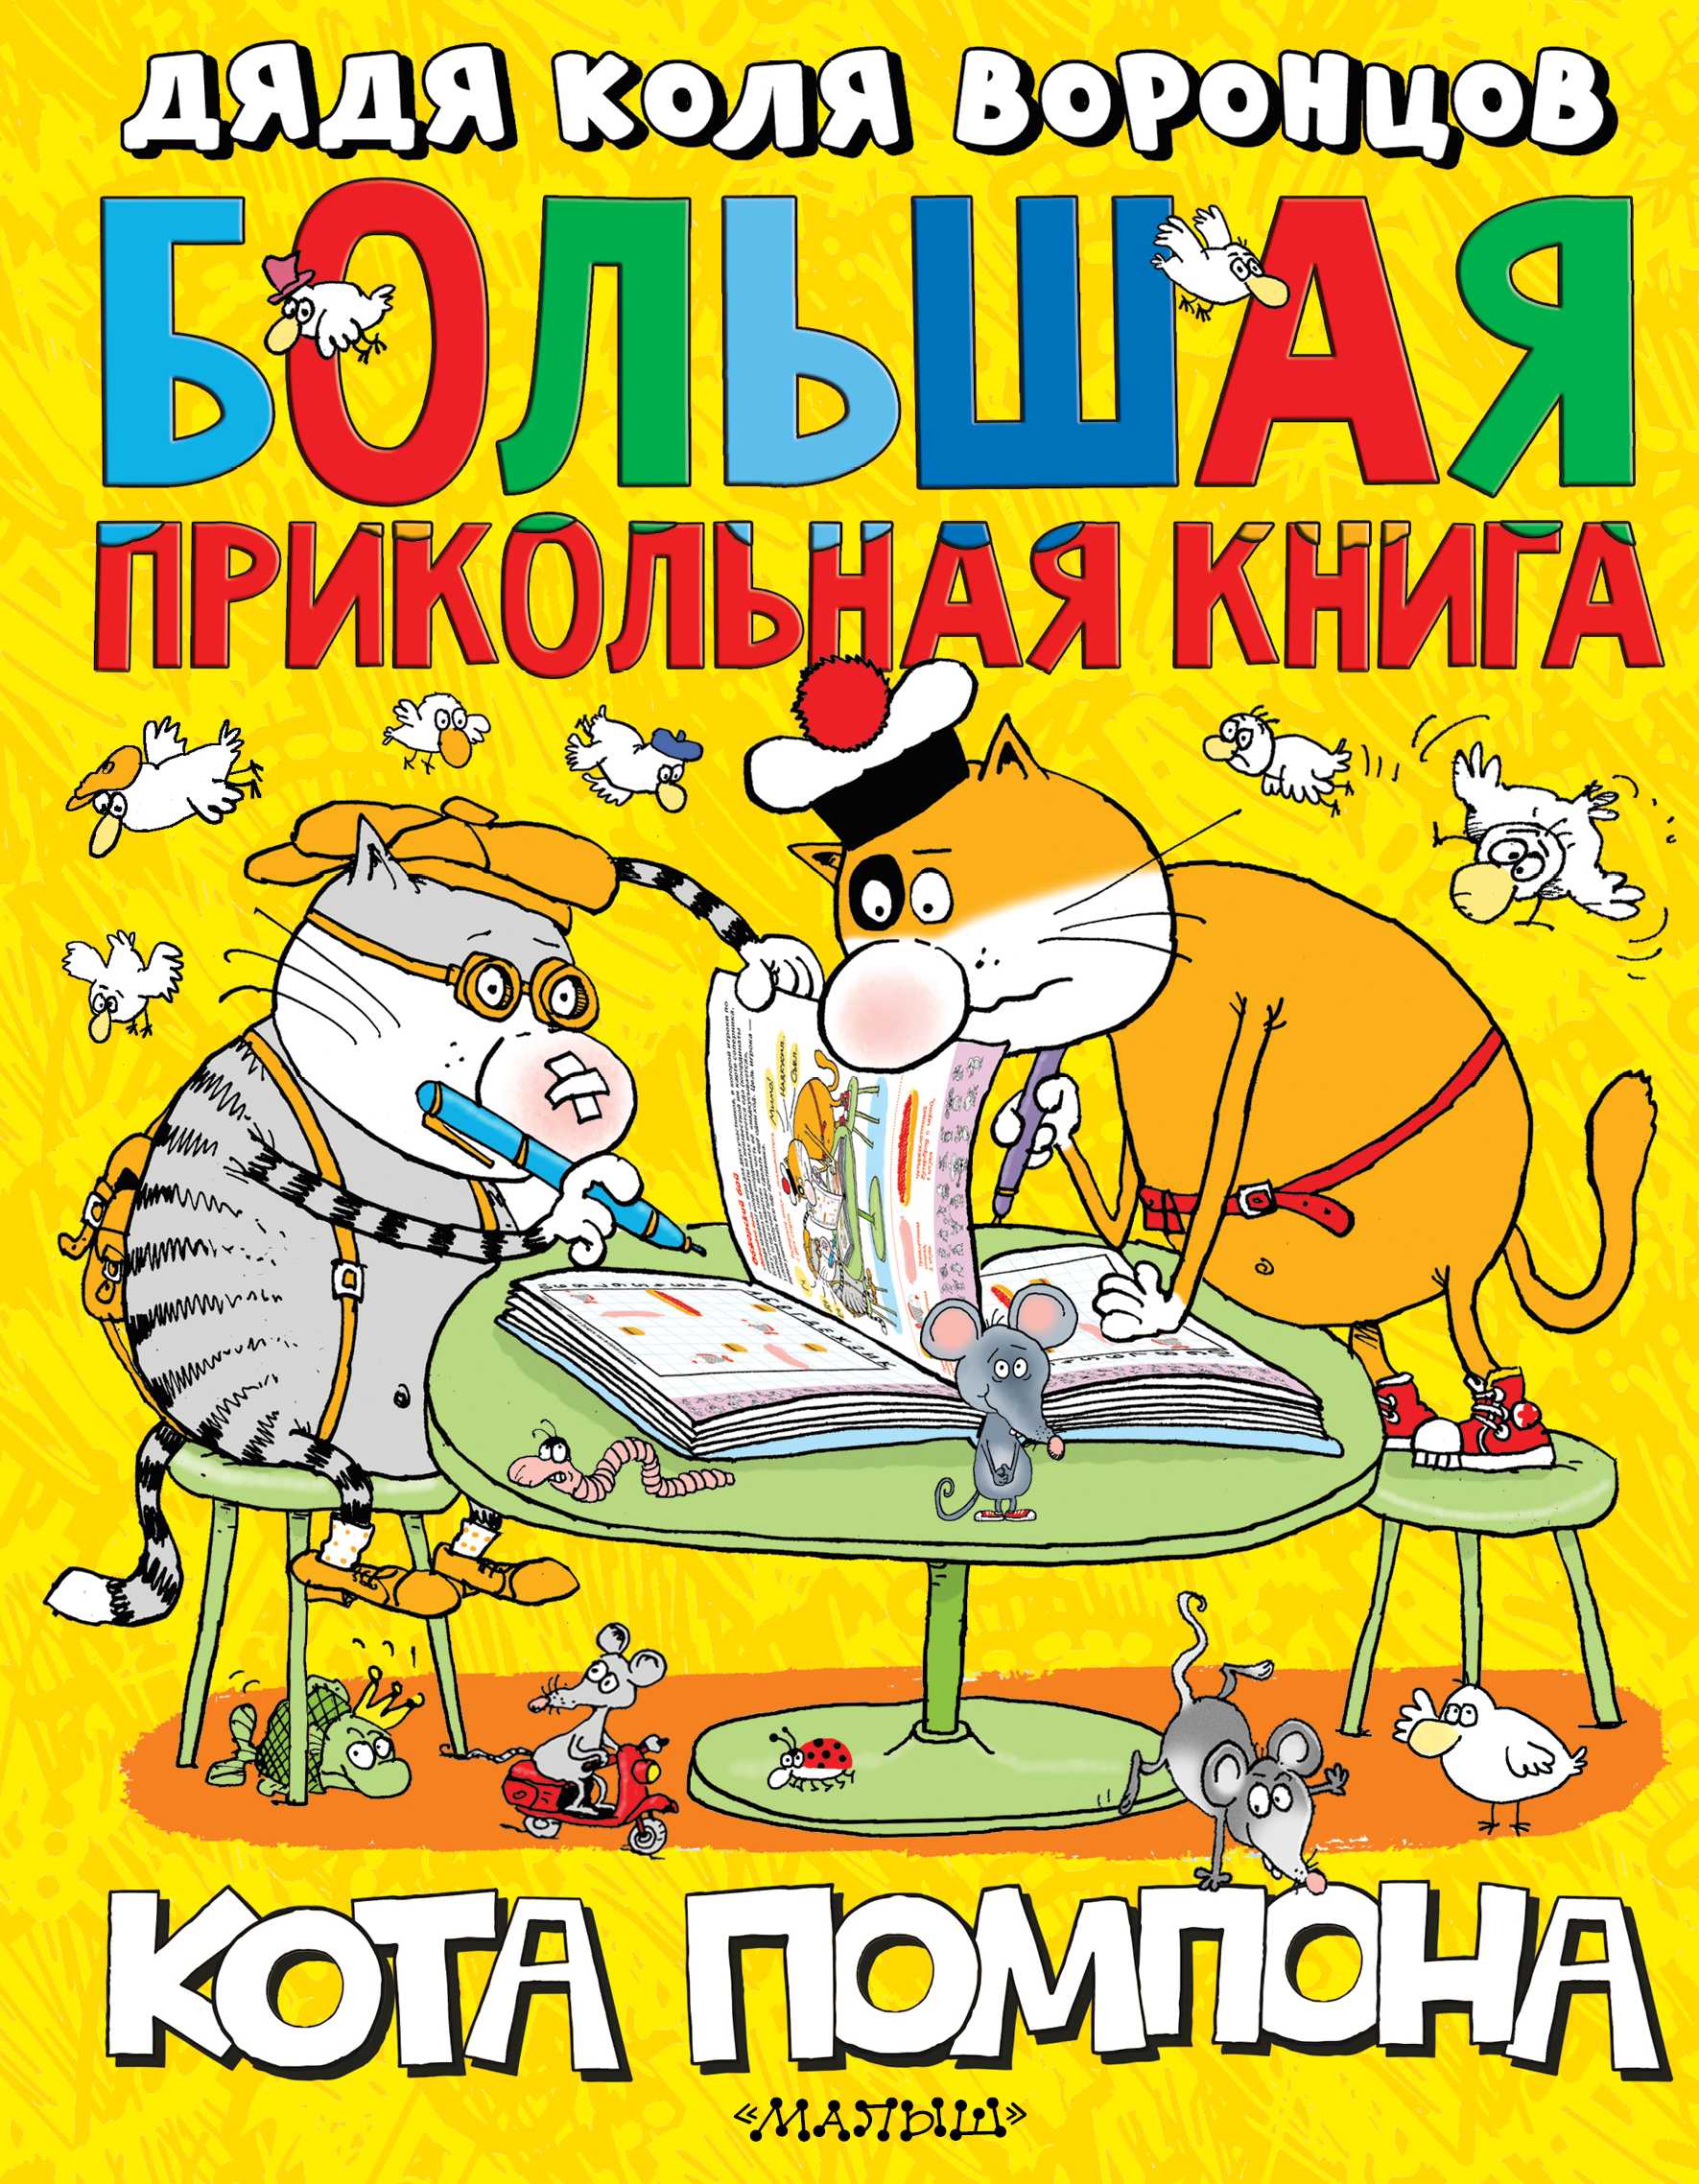 Сплошное мимими: 10 книг про котиков для детей